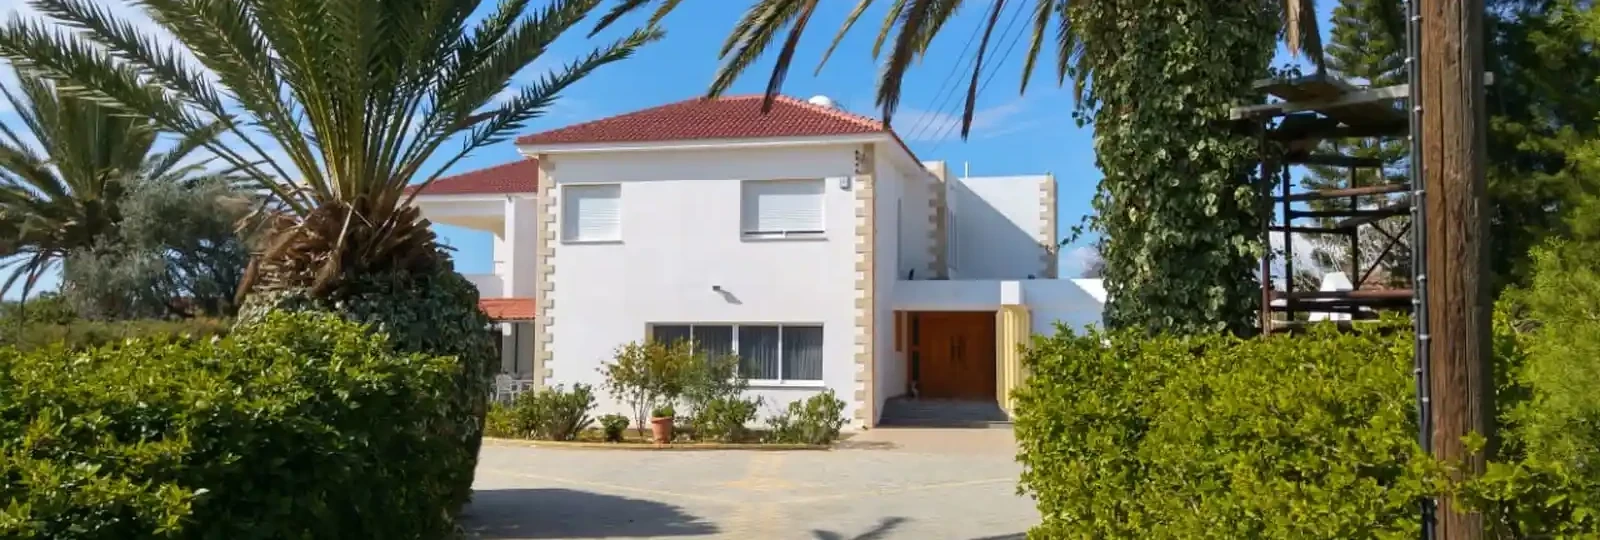 3-bedroom villa to rent €2.700, image 1